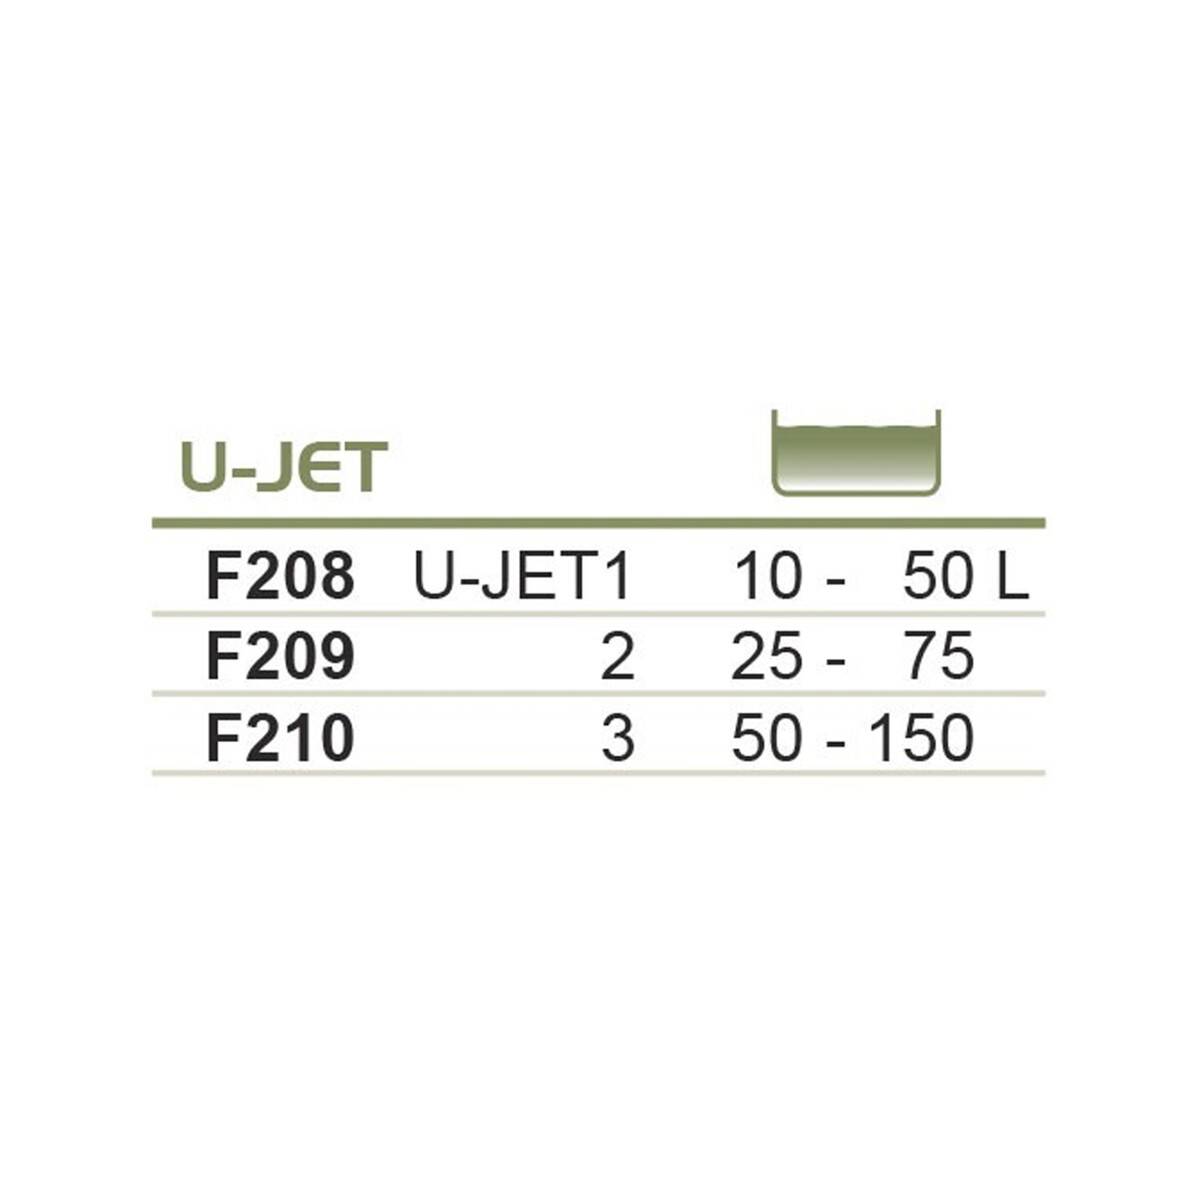 Filtr gąbkowy U-JET 3 Happet do akw. 50-100l (Zdjęcie 2)